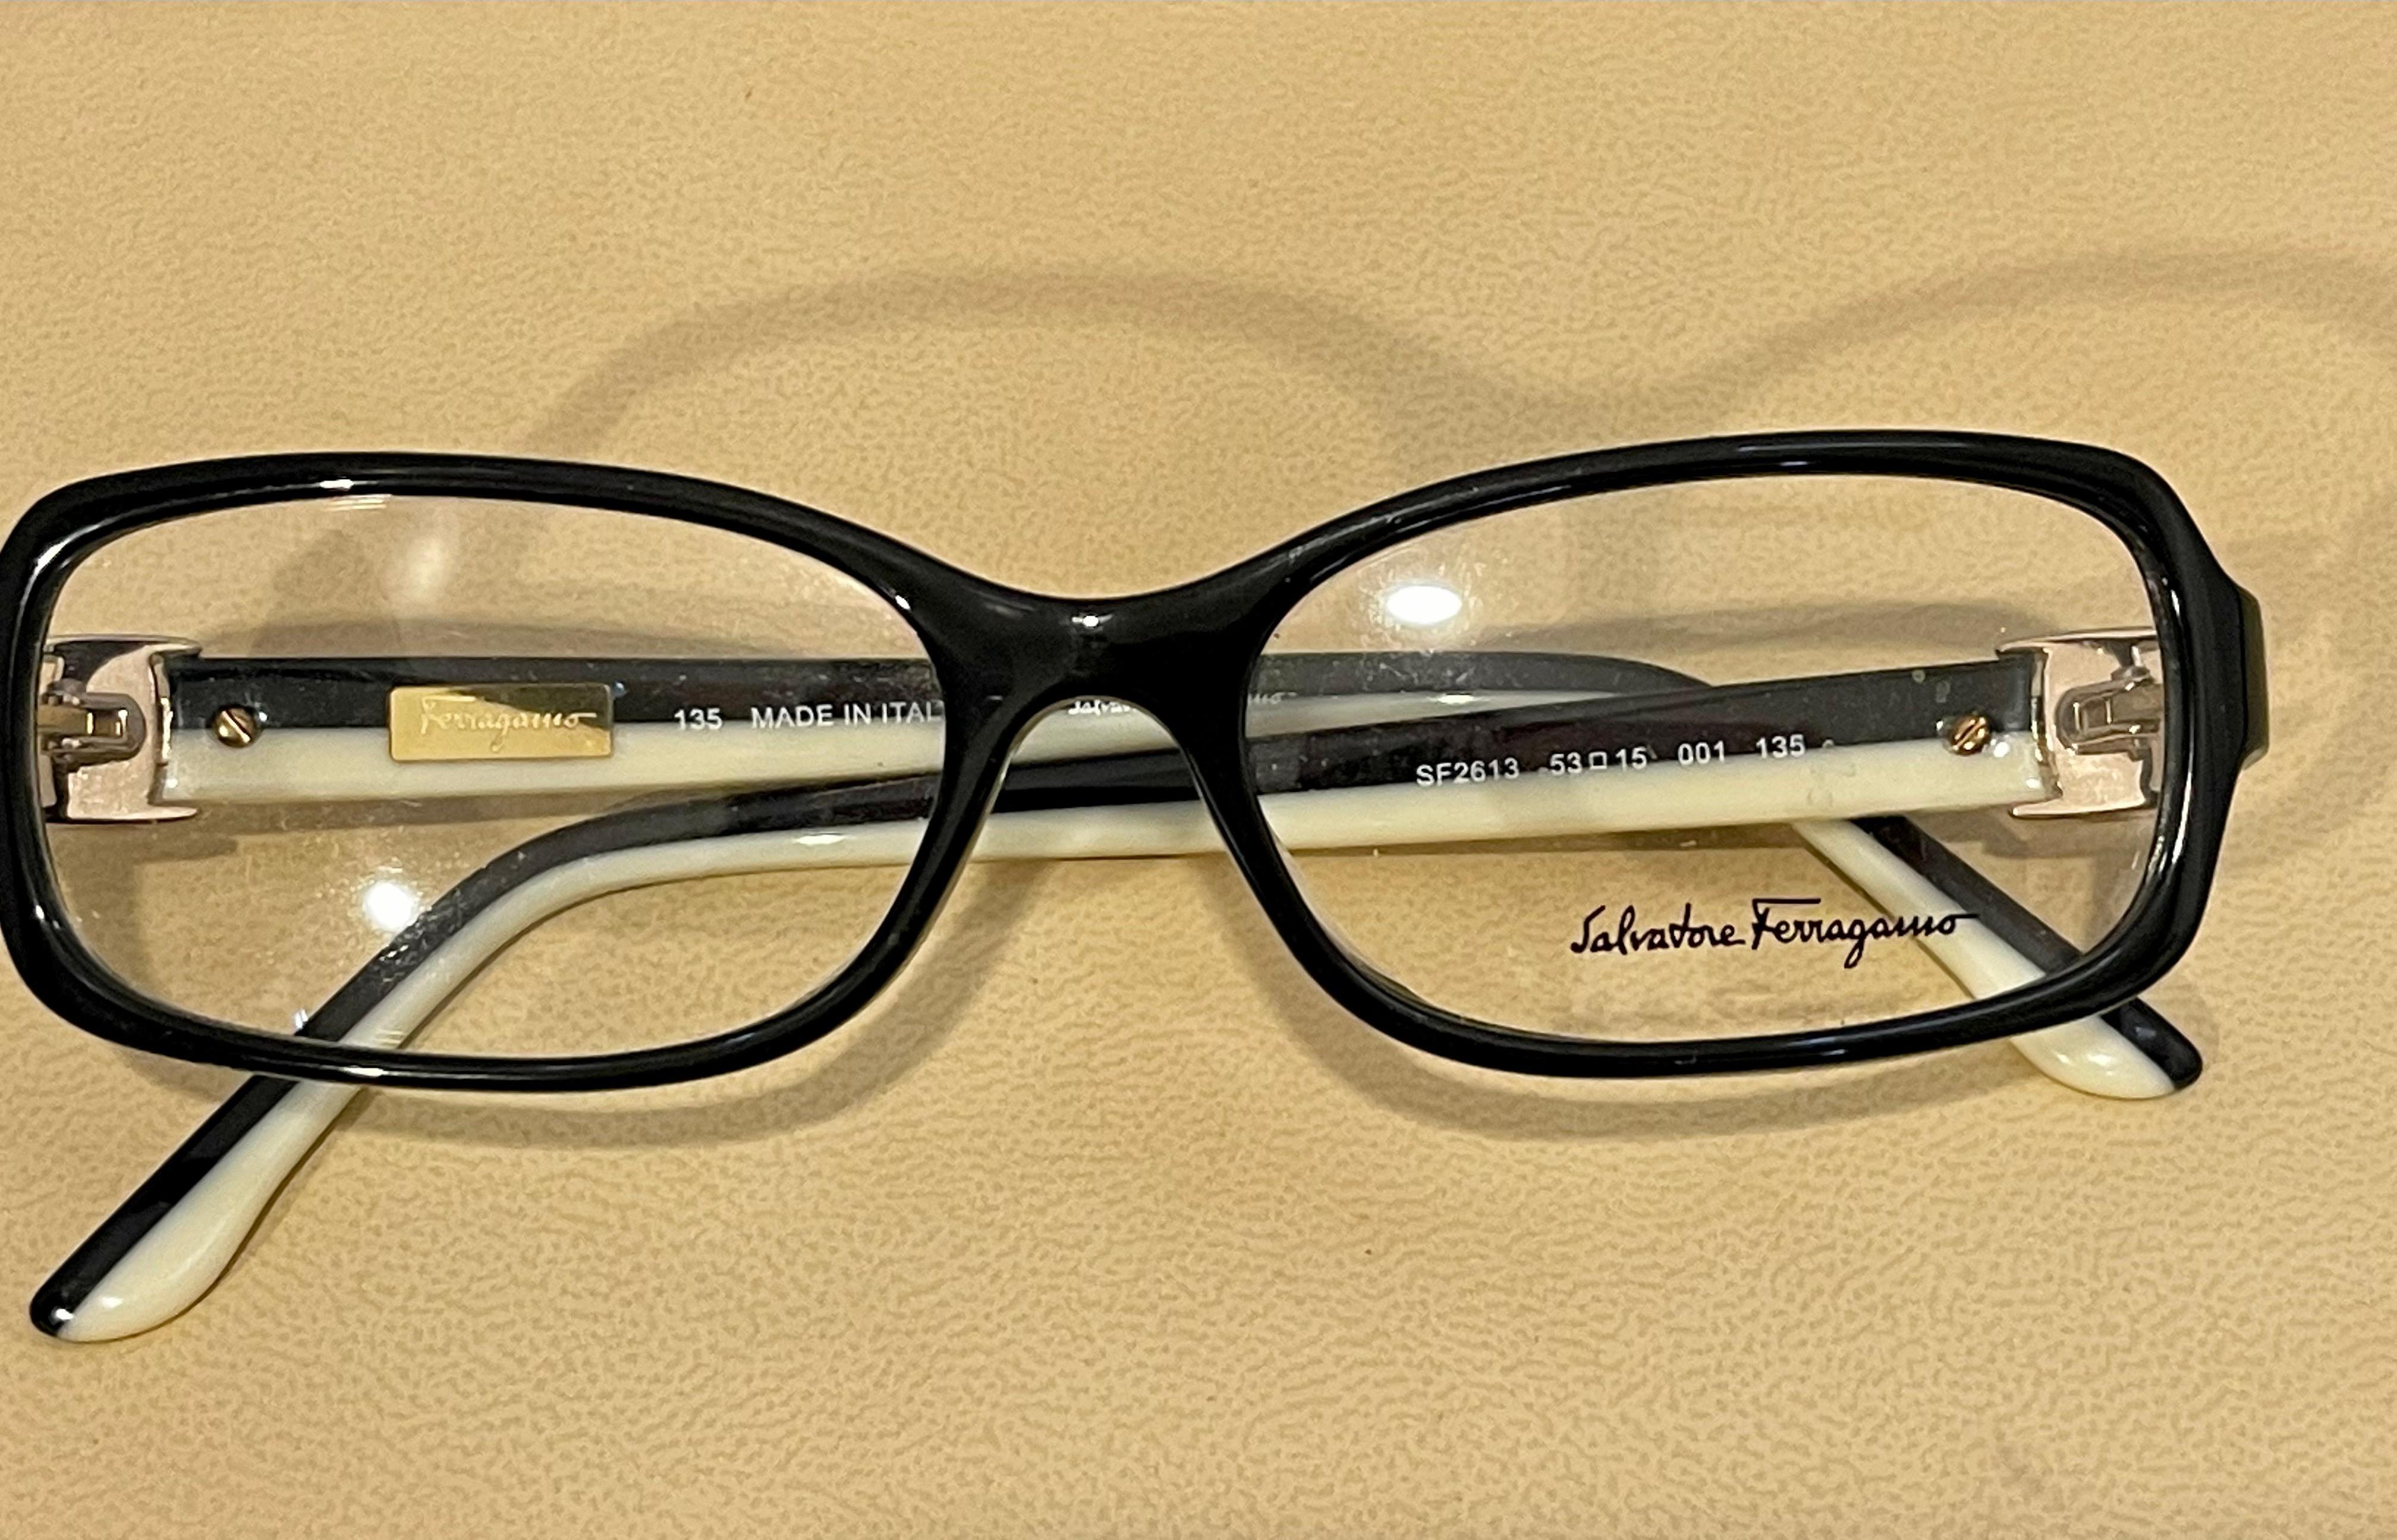 Women's Salvatore Ferragamo 2613 53-15  001 135 Eyeglasses Black Frames clear Lenses 